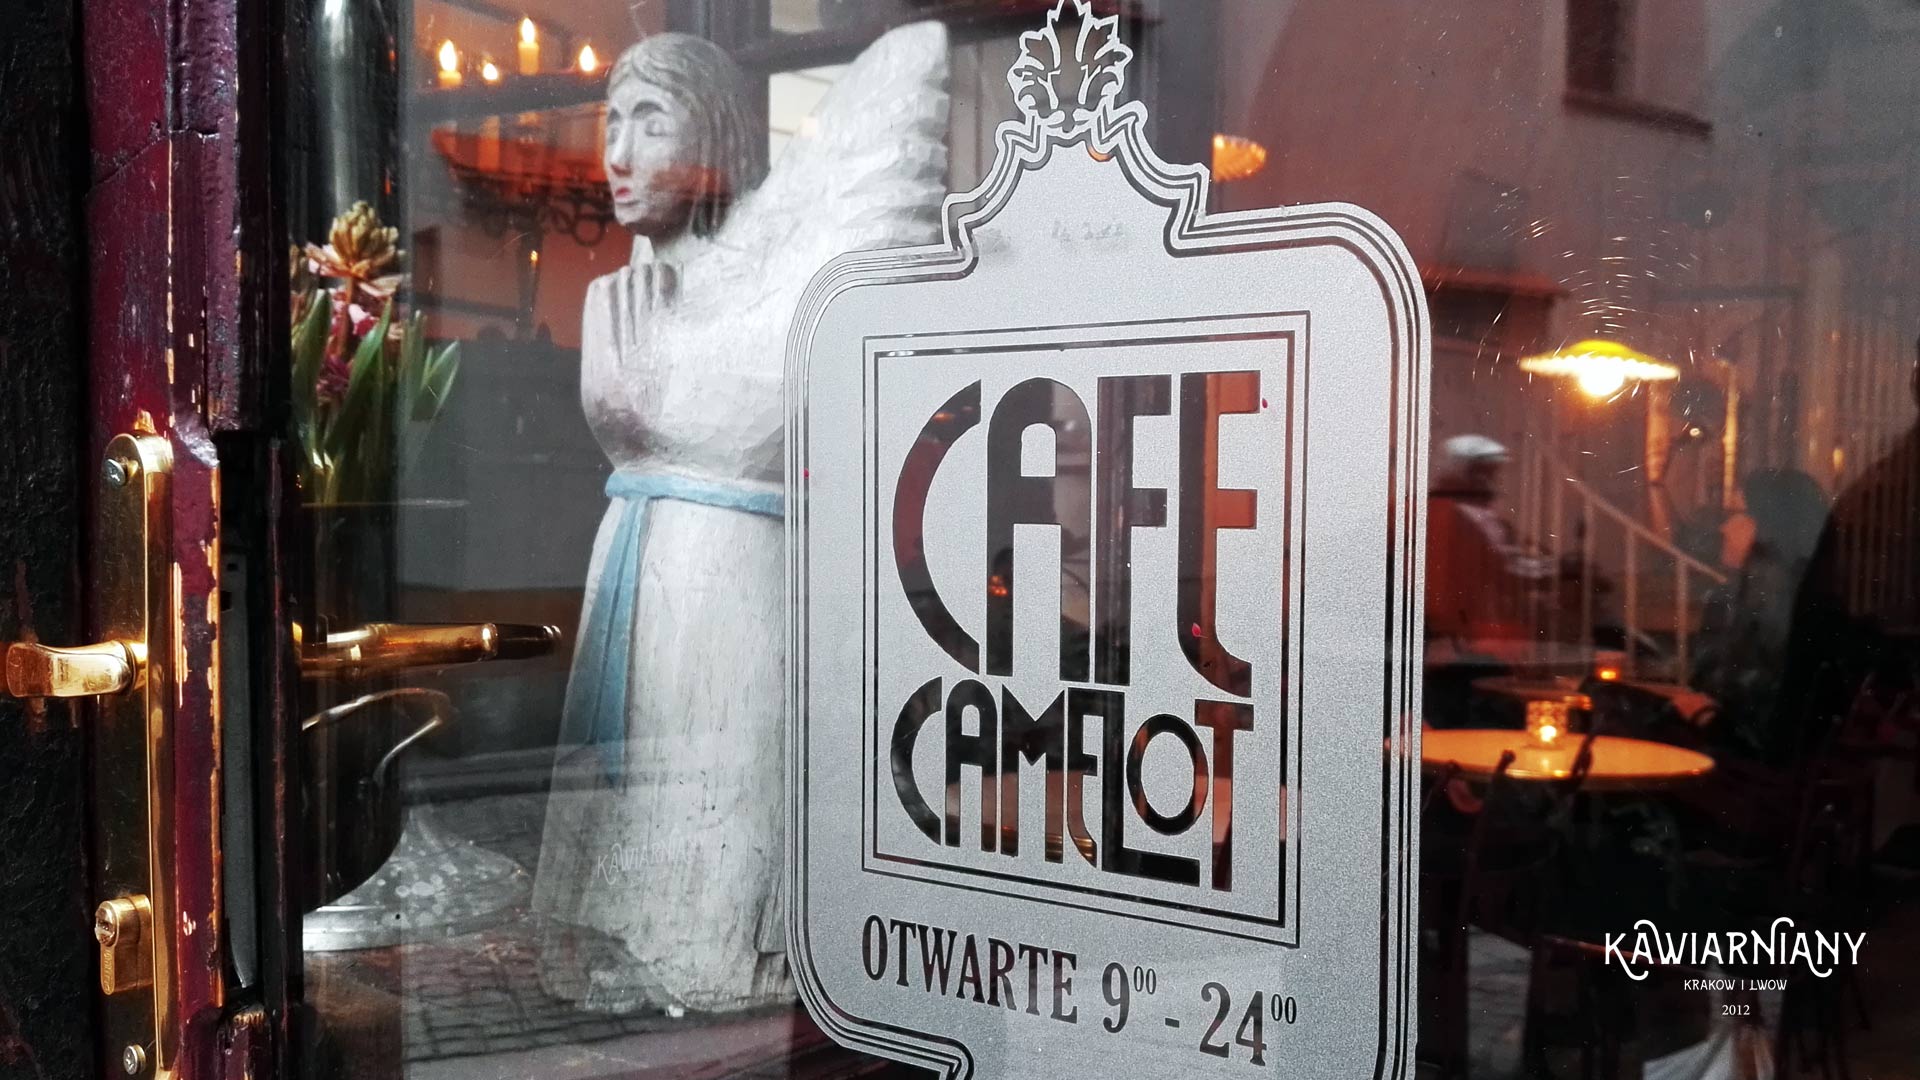 Kawiarnia Cafe Camelot w Krakowie, ul. św. Tomasza 17